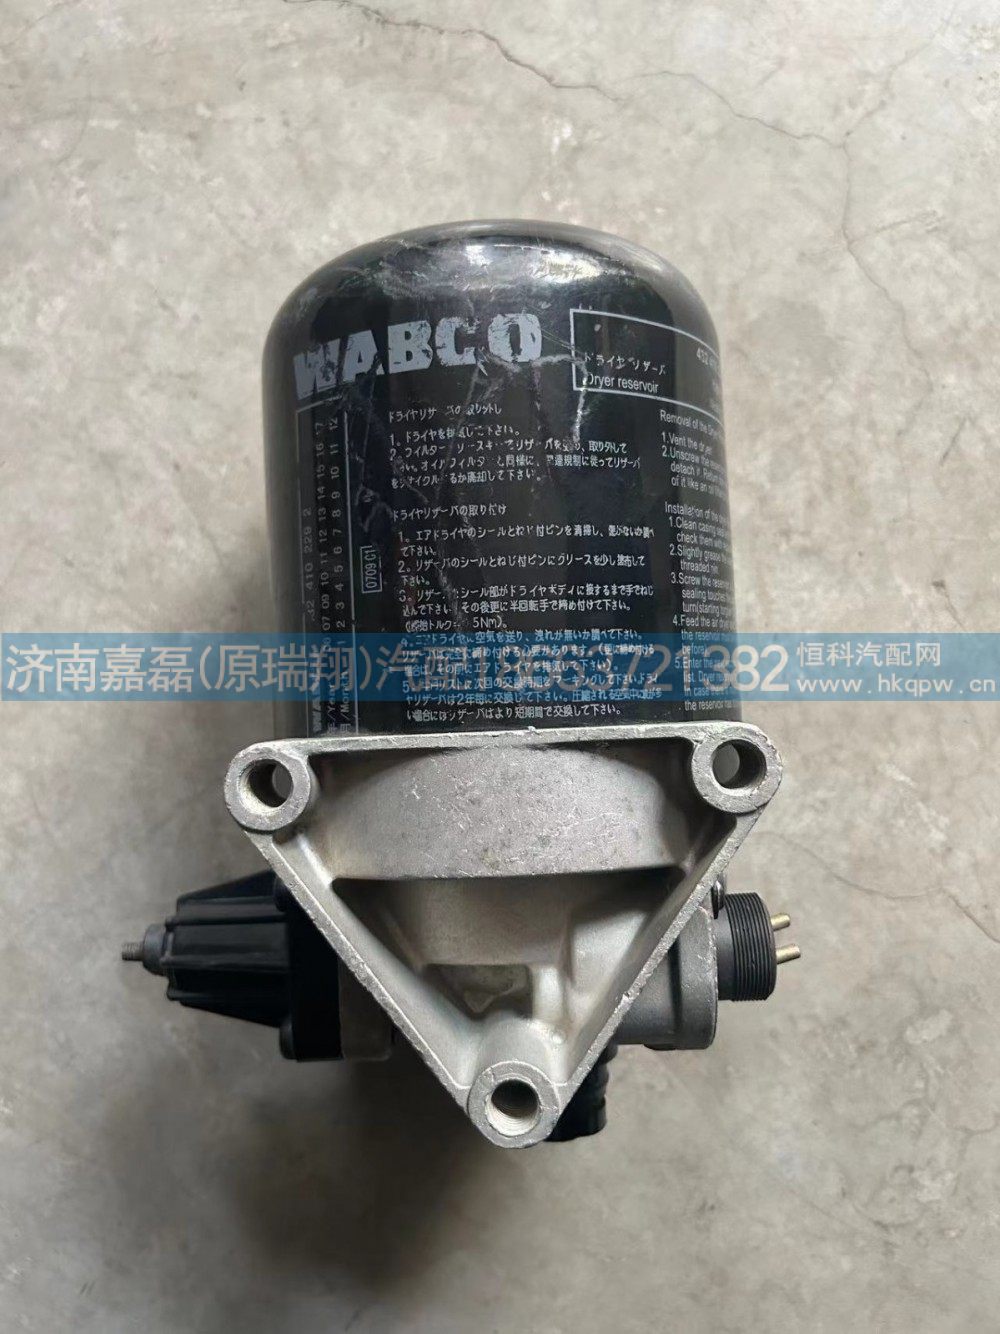 WG9000360521,干燥器总成,济南嘉磊汽车配件有限公司(原济南瑞翔)